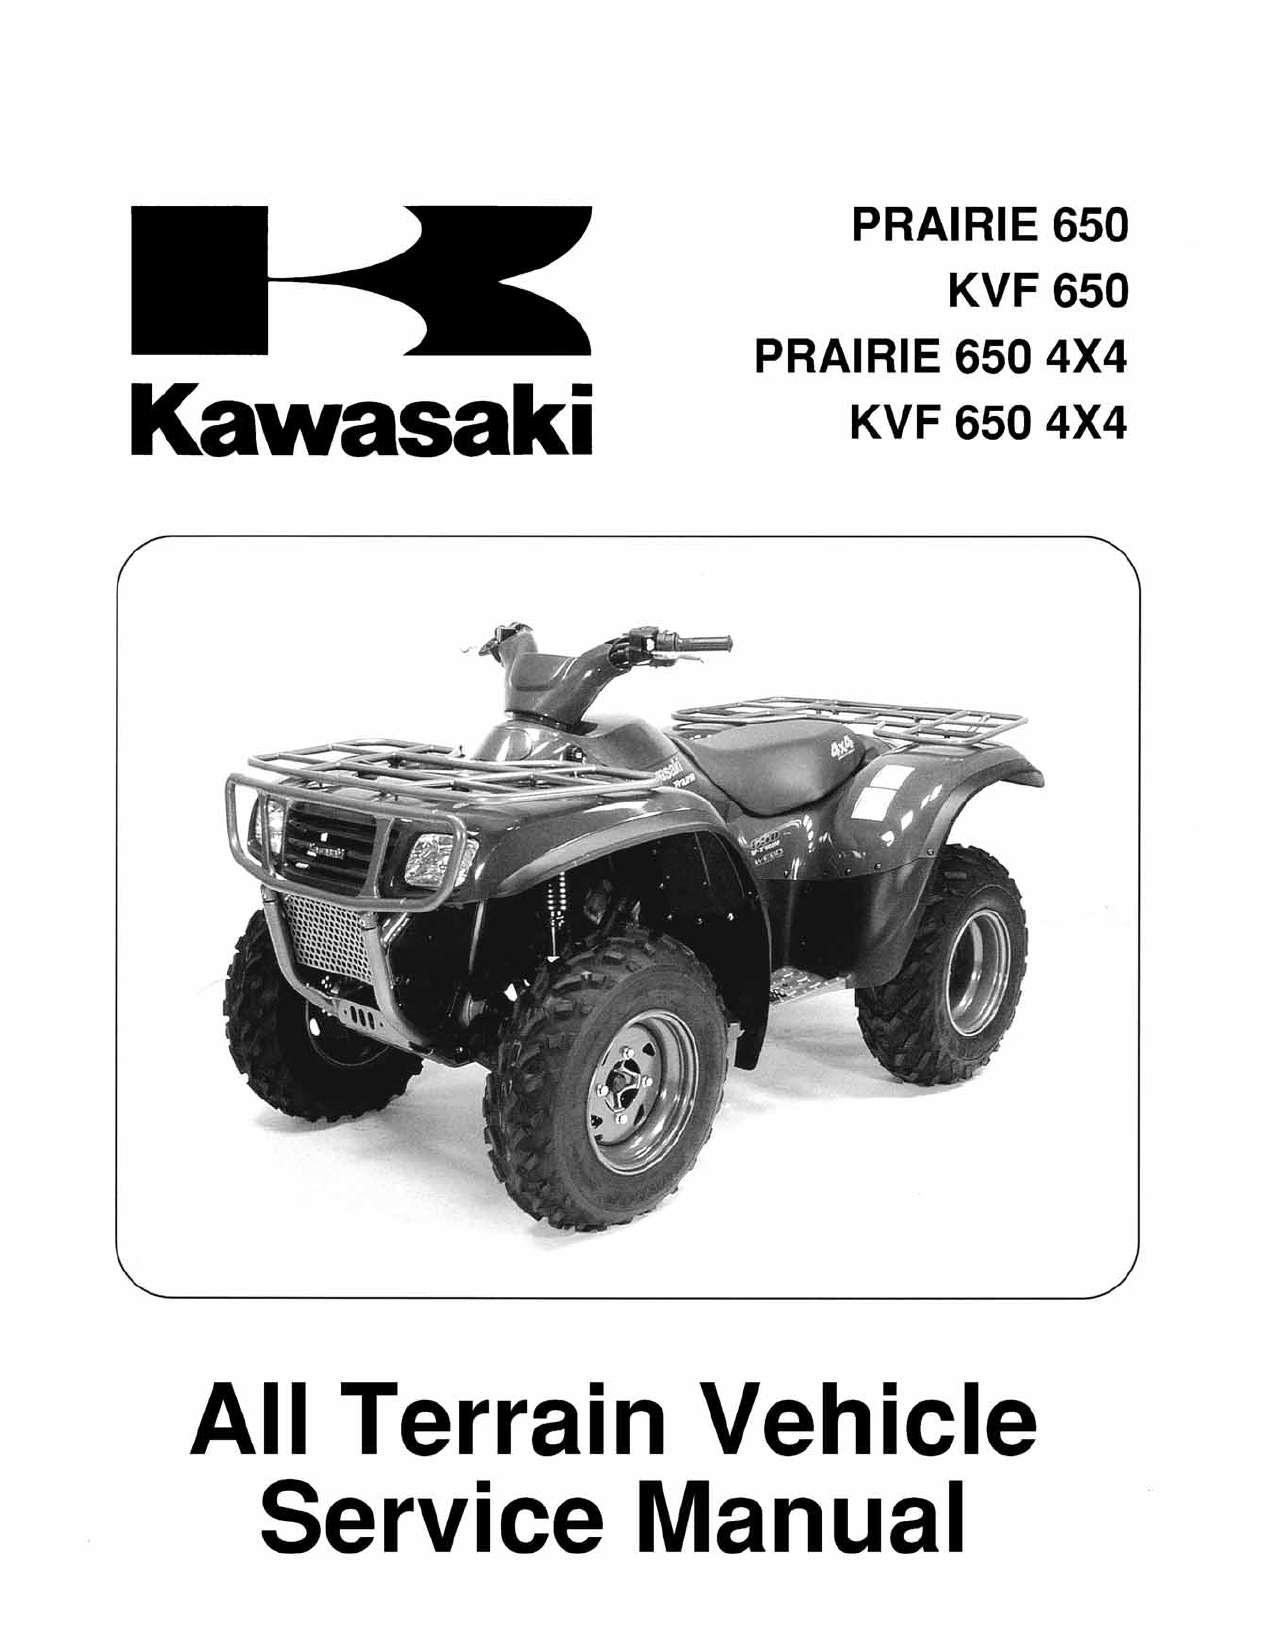 Kawasaki Prairie 650 Prairie 650 4x4 Service Manual Manualzz